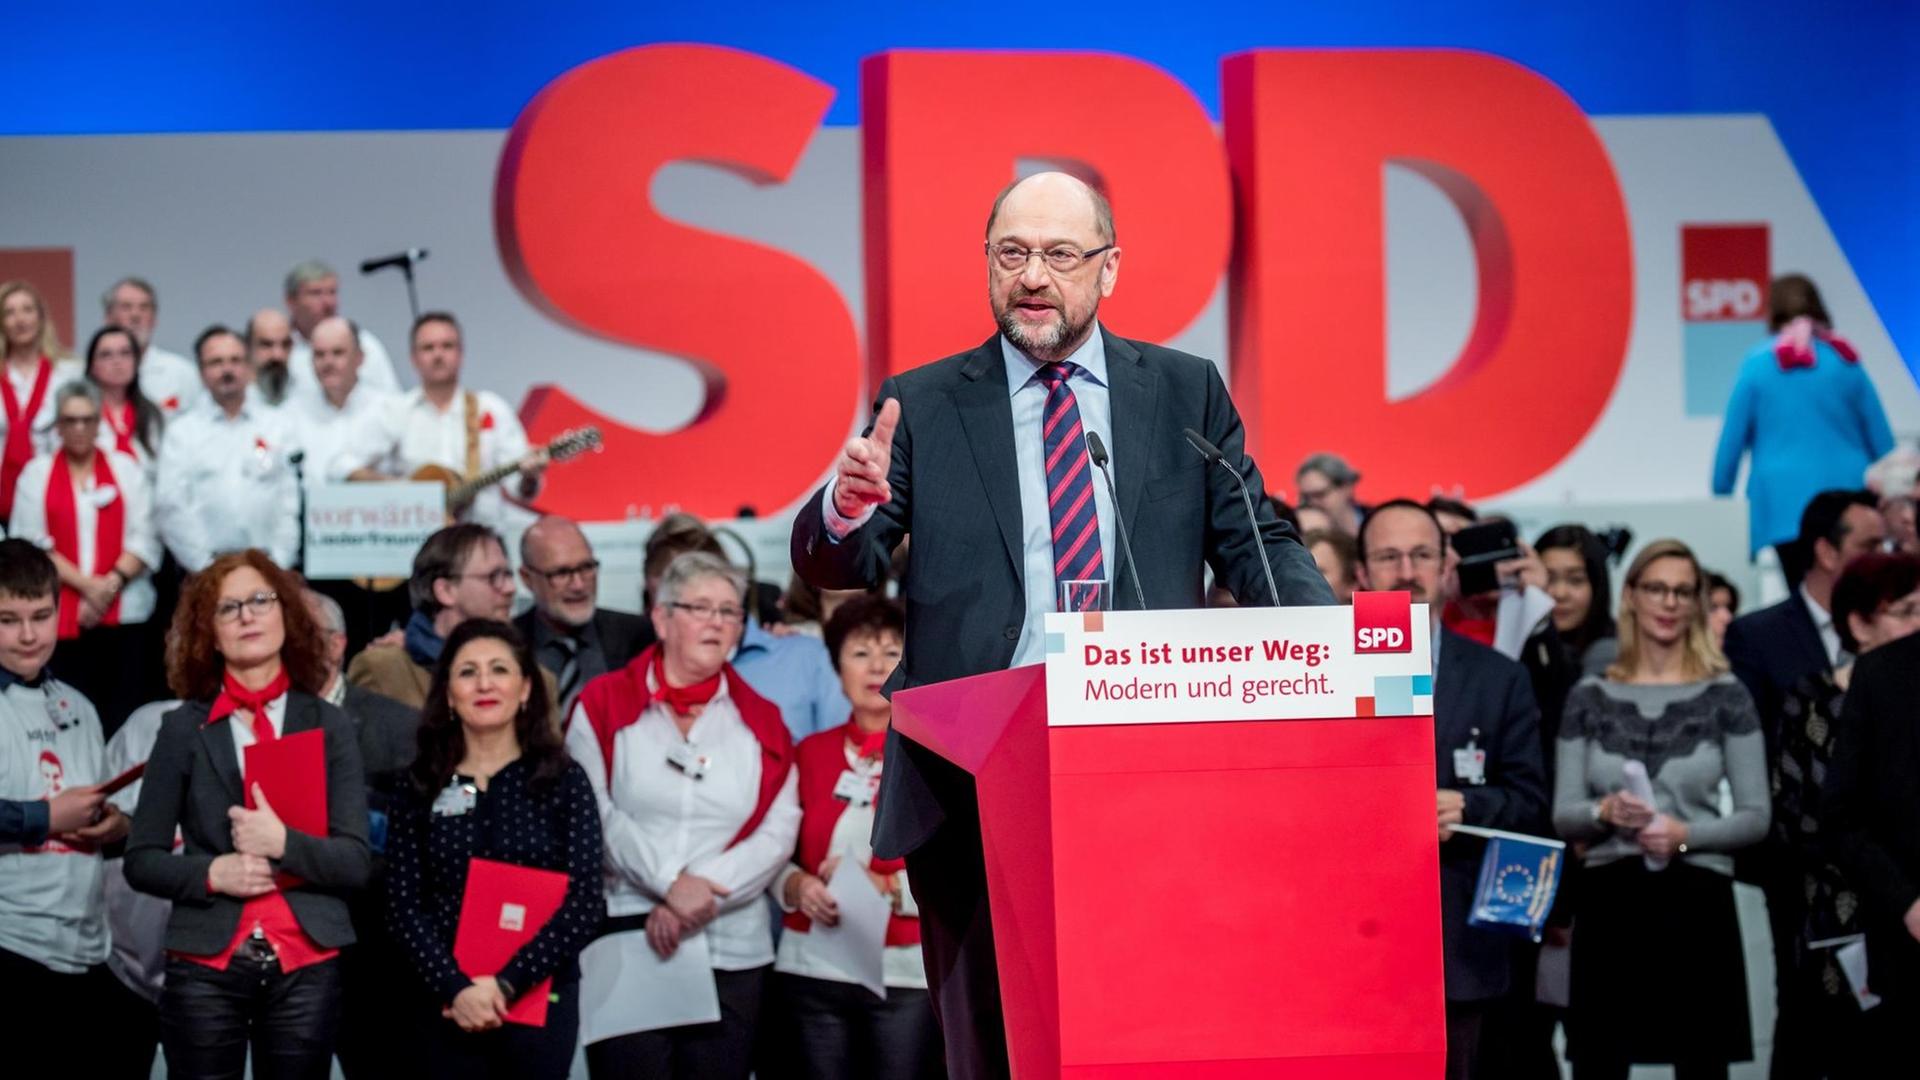 Schulz spricht und gestikuliert an einem Podest mit der Aufschrift "Das ist unser Weg: Modern und gerecht." Dahinter ein übergroßer SPD-Schriftzug und Parteitagsteilnehmer.